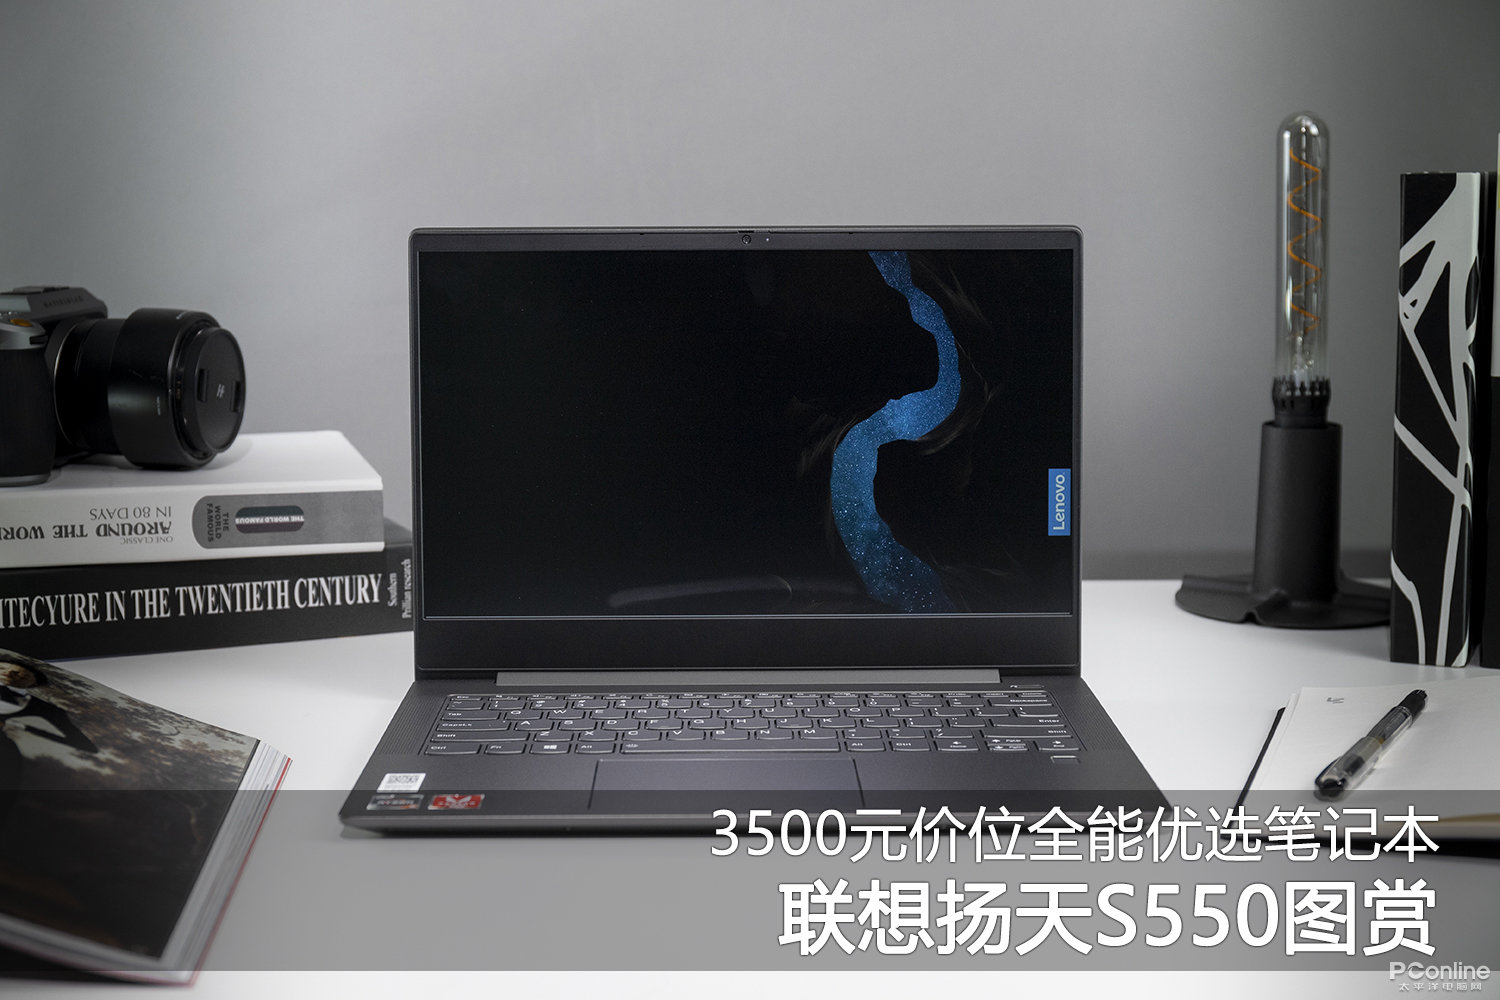 3500元价位全能优选笔记本 联想扬天S550图赏